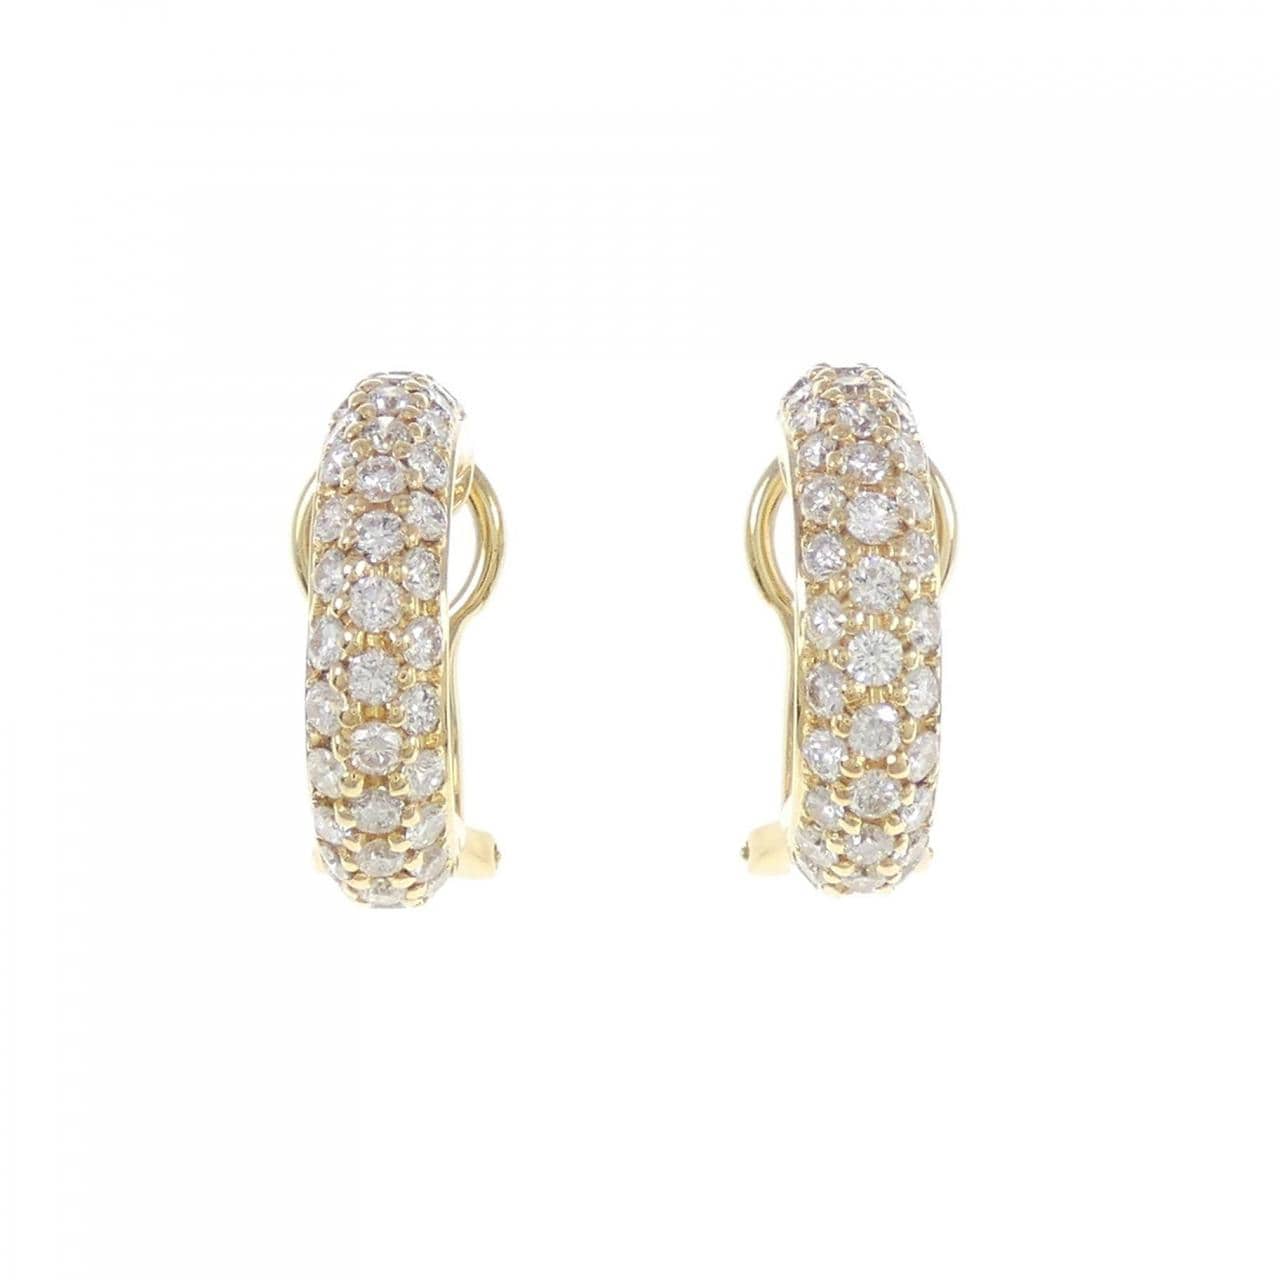 K18YG Diamond earrings 1.74CT